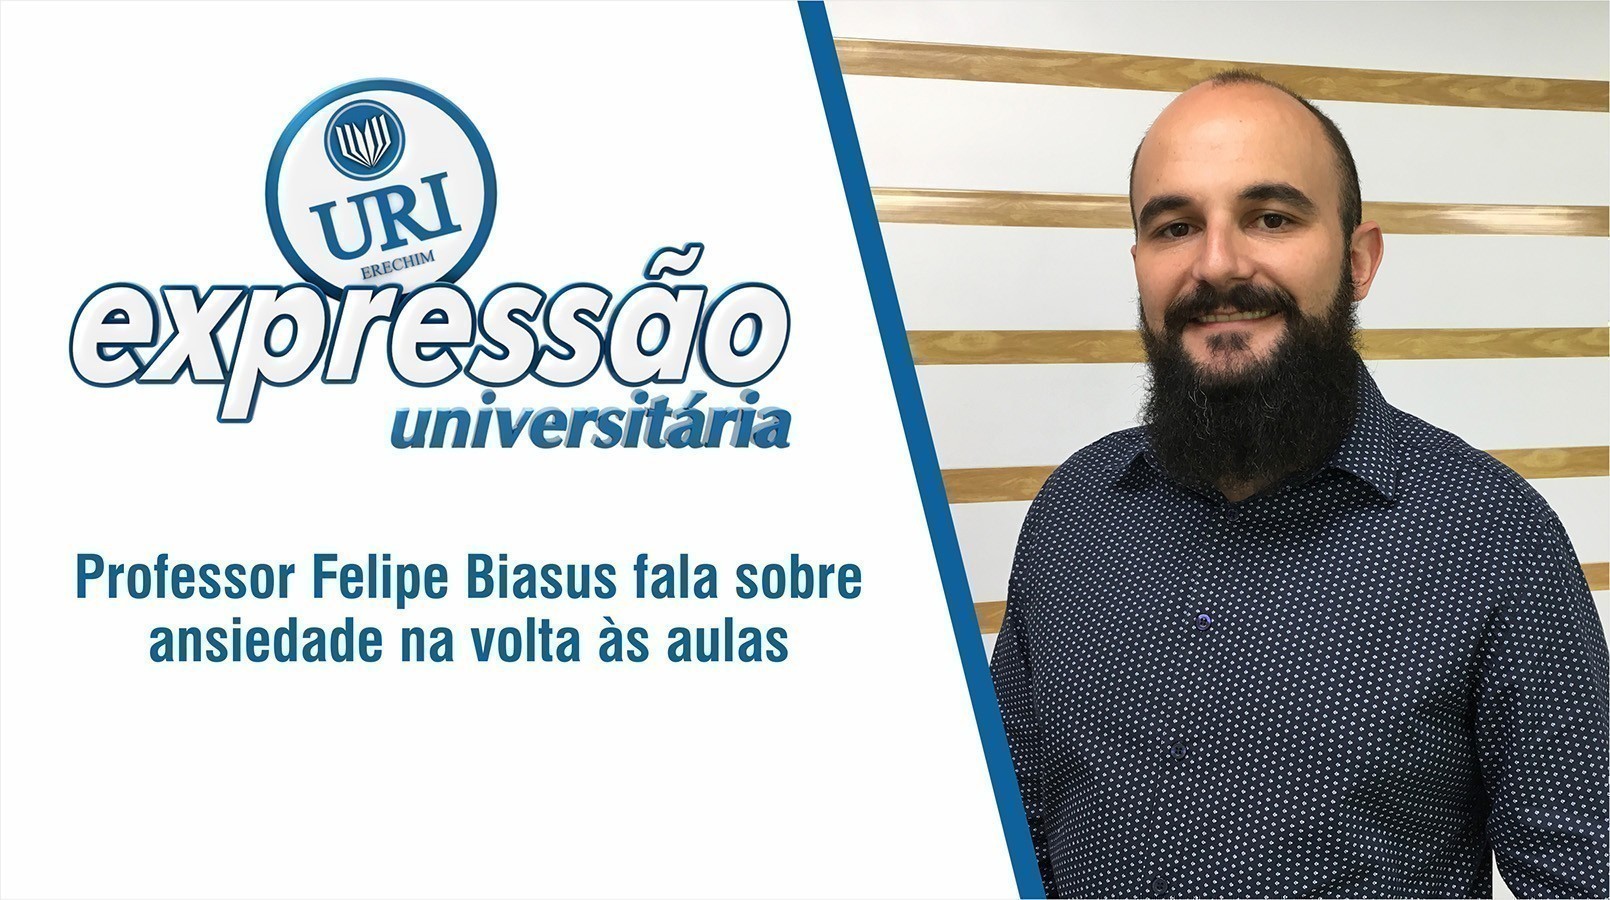 Professor Felipe Biasus aborda os sentimentos gerados em alunos e familiares na volta s aulas